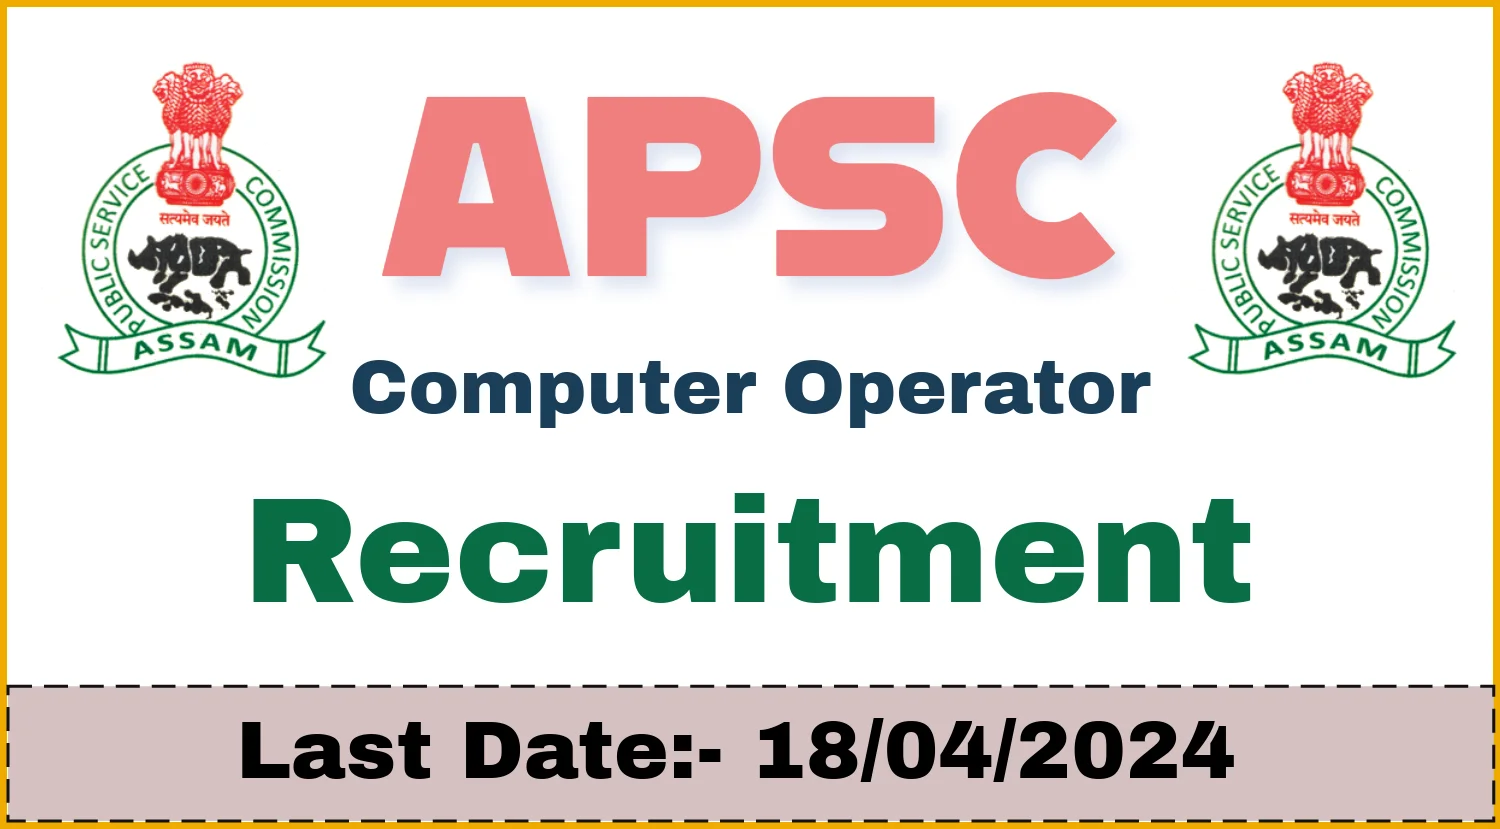 APSC Recruitment 2024